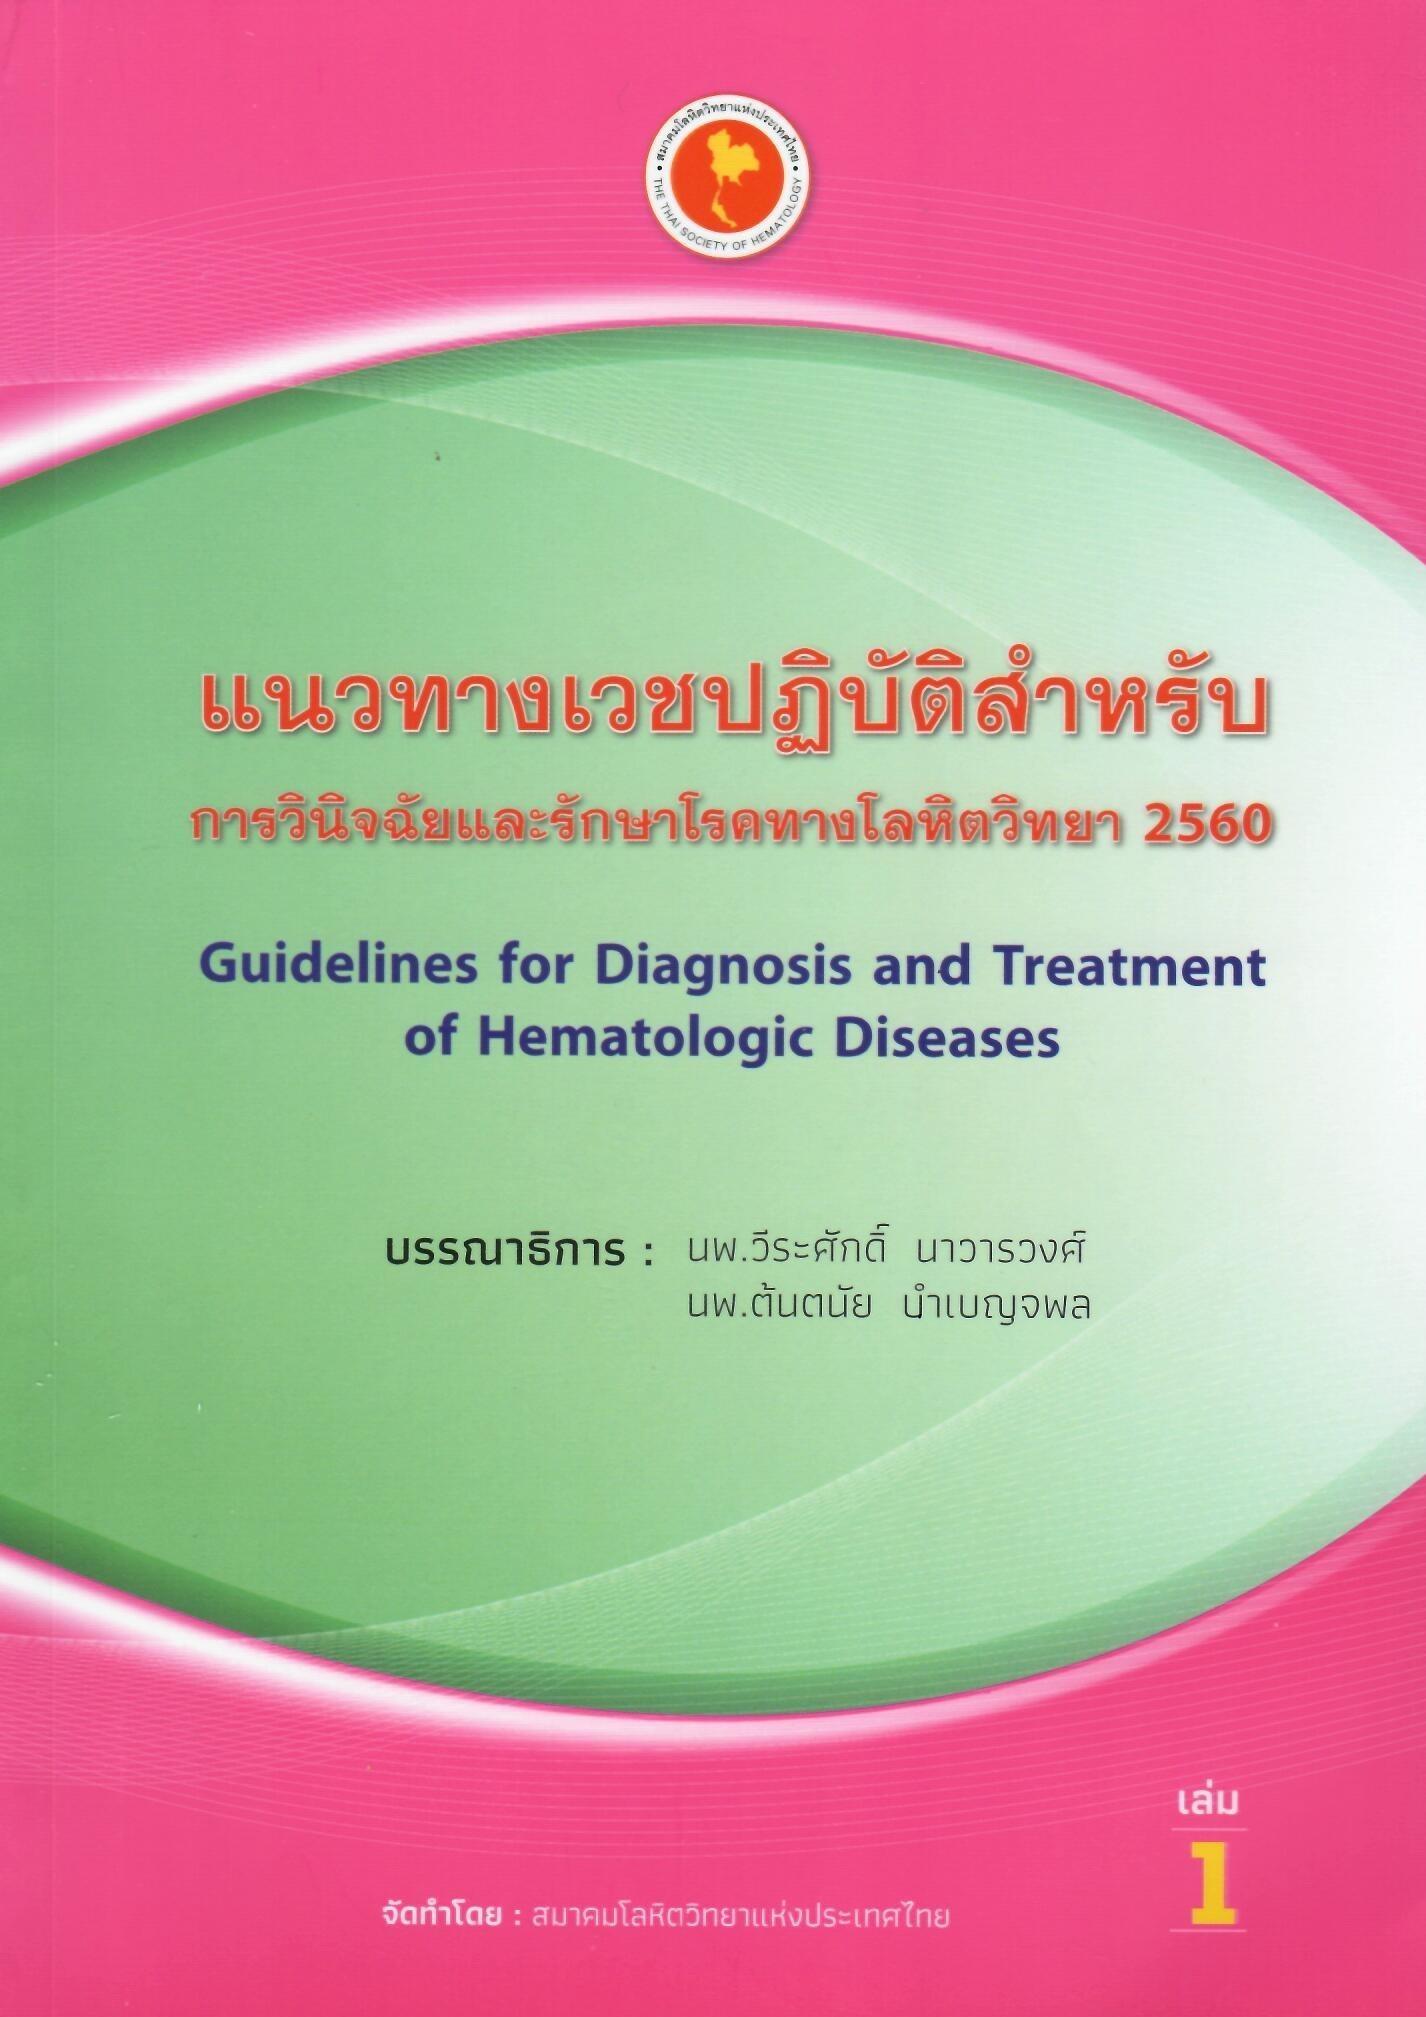 แนวทางเวชปฏิบัติสำหรับการวินิจฉัยและรักษาโรคทางโลหิตวิทยา 2560 เล่ม 1 = Guidelines for diagnosis and treatment of hematologic diseases